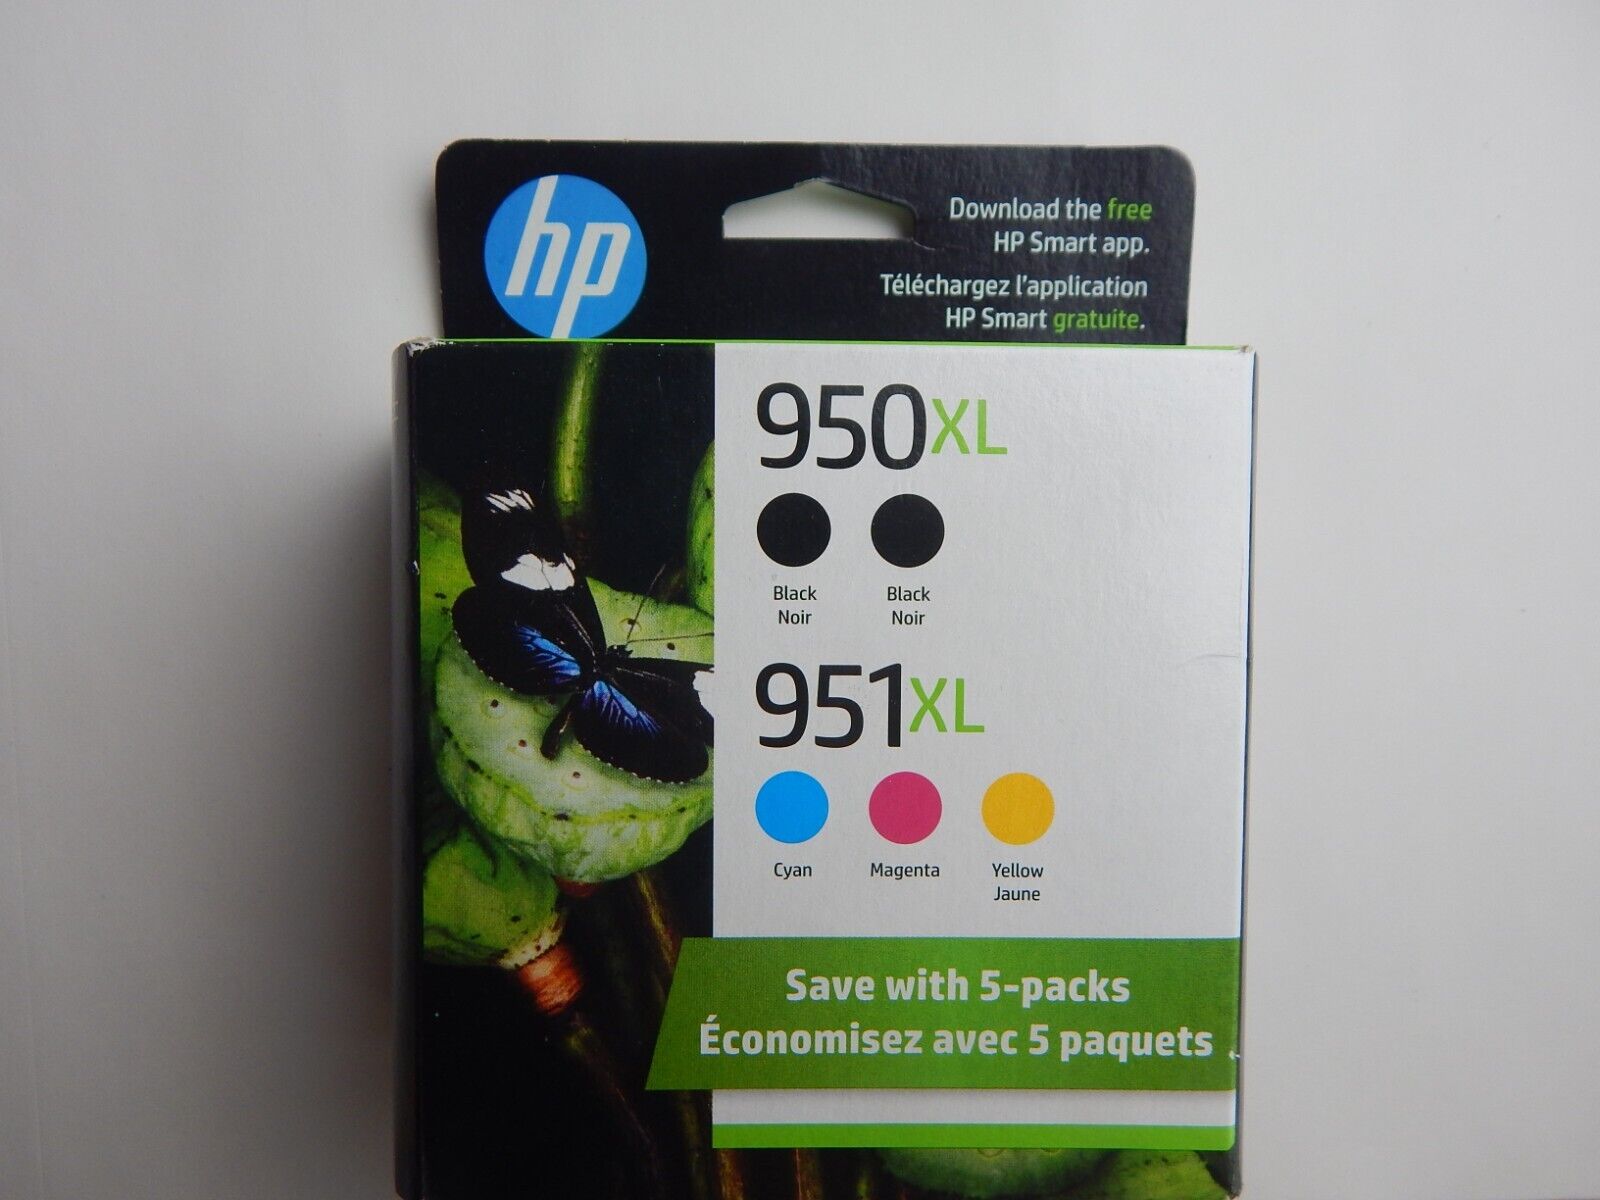 5-PACK HP GENUINE 950XL Black & 951XL Color Ink OFFICEJET PRO 8630 SEALED 25